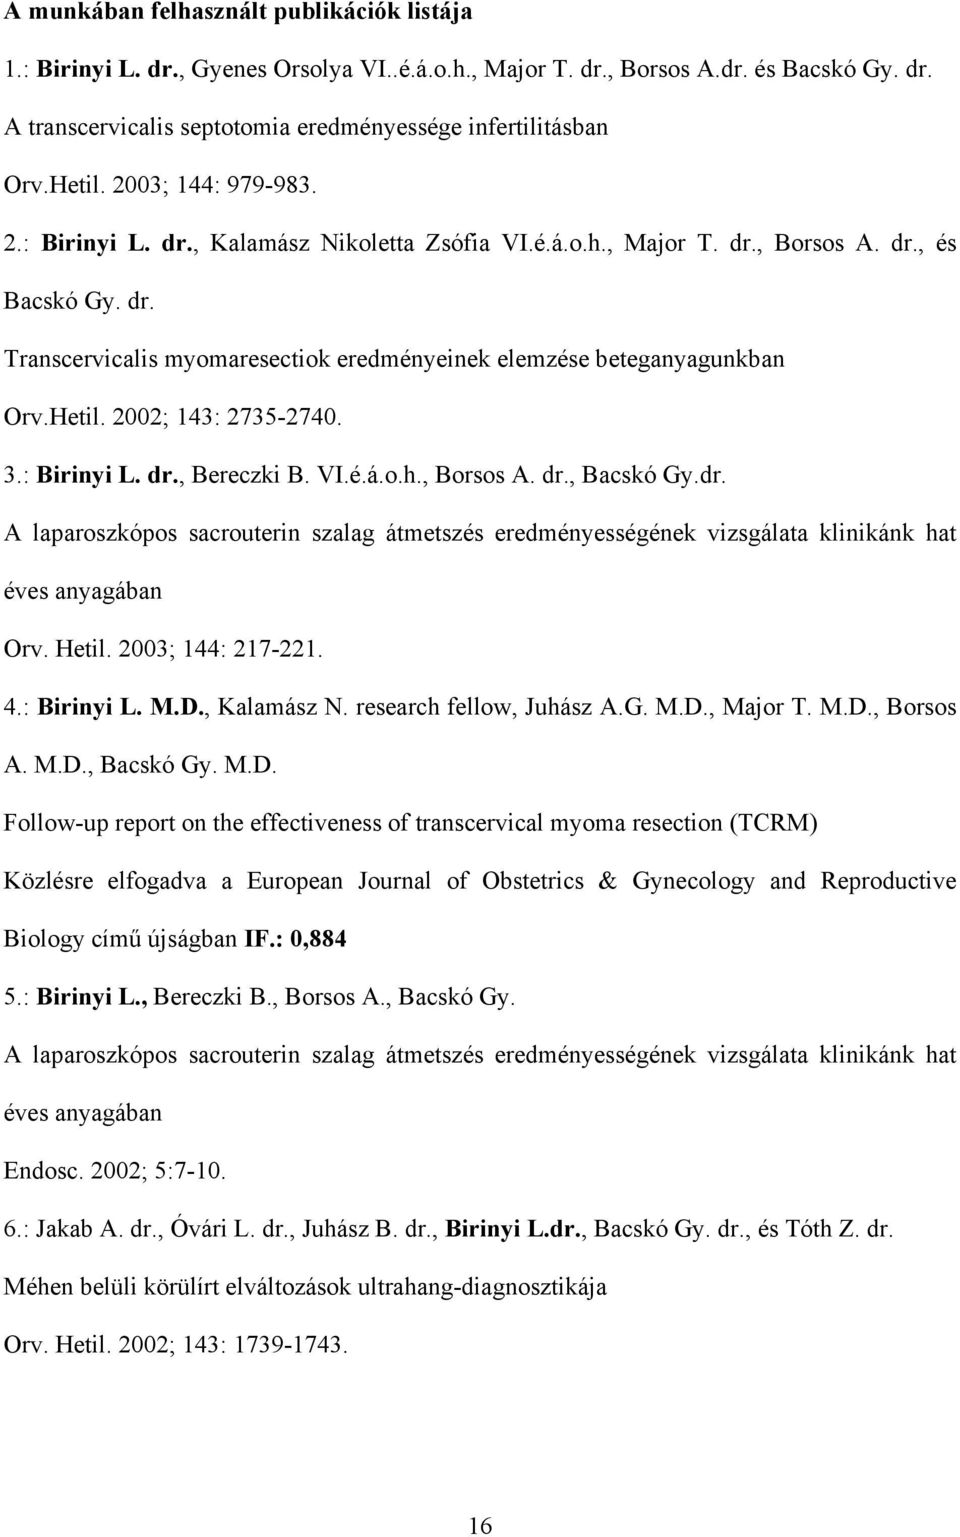 Hetil. 2002; 143: 2735-2740. 3.: Birinyi L. dr., Bereczki B. VI.é.á.o.h., Borsos A. dr., Bacskó Gy.dr. A laparoszkópos sacrouterin szalag átmetszés eredményességének vizsgálata klinikánk hat éves anyagában Orv.